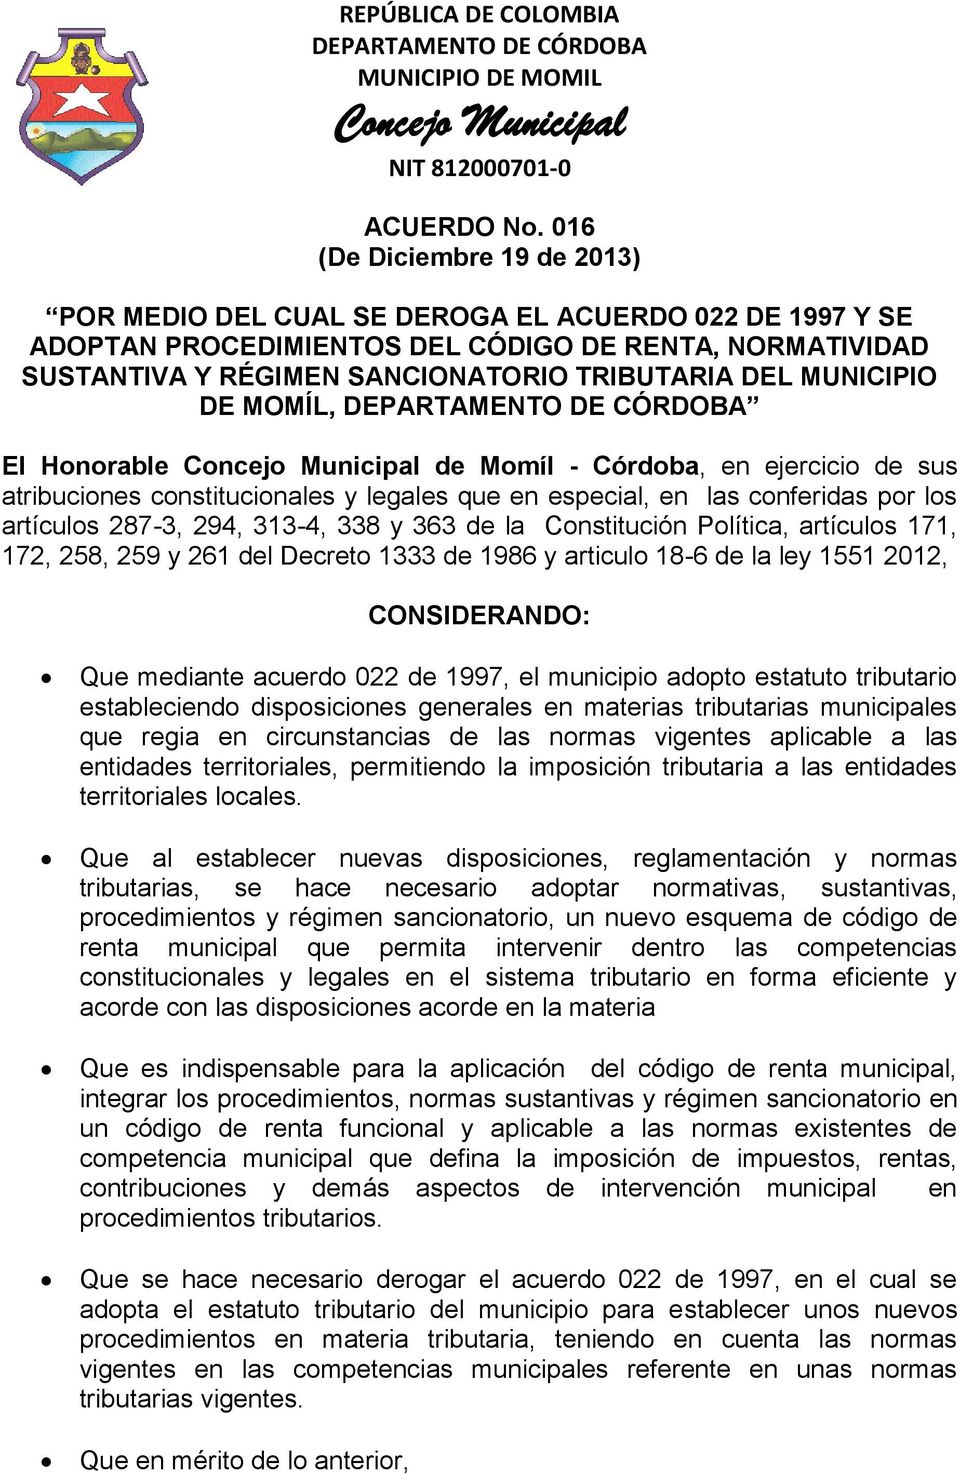 MUNICIPIO DE MOMÍL, El Honorable de Momíl - Córdoba, en ejercicio de sus atribuciones constitucionales y legales que en especial, en las conferidas por los artículos 287-3, 294, 313-4, 338 y 363 de